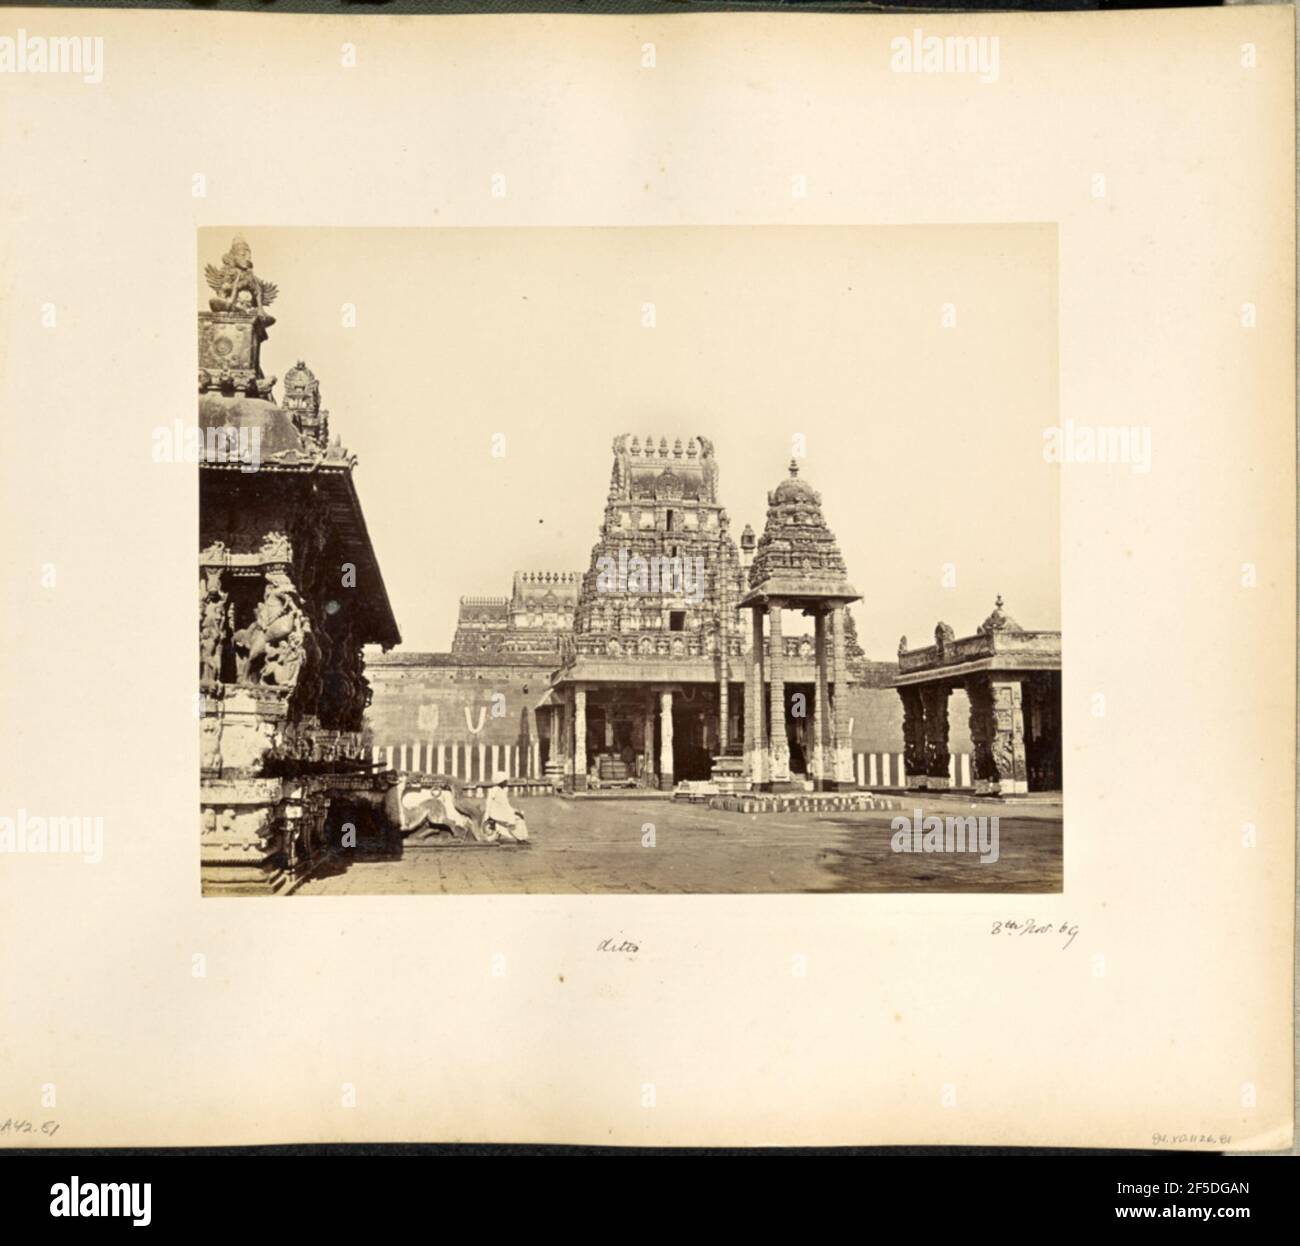 Conjivoram en Madras. Vista de un patio en el templo Varadharaja Perumal en Kanchipuram. Un beso alto y estrecho con cuatro columnas talladas y un techo tallado en forma de campana se encuentra en el centro del patio frente a la gopura, o pirámide de la puerta del templo. Un pórtico de piedra, o mandapa, rodea la gopura, y dos edificios adicionales, ornately tallado se encuentran en los lados derecho e izquierdo del patio. (Recto, Mount) parte inferior izquierda, escrita a mano en lápiz: 'A42,81 (Bou)' parte inferior central, escrita a mano en tinta negra: 'ditto' parte inferior izquierda, escrita a mano en tinta negra: '8th de noviembre de 69' Foto de stock